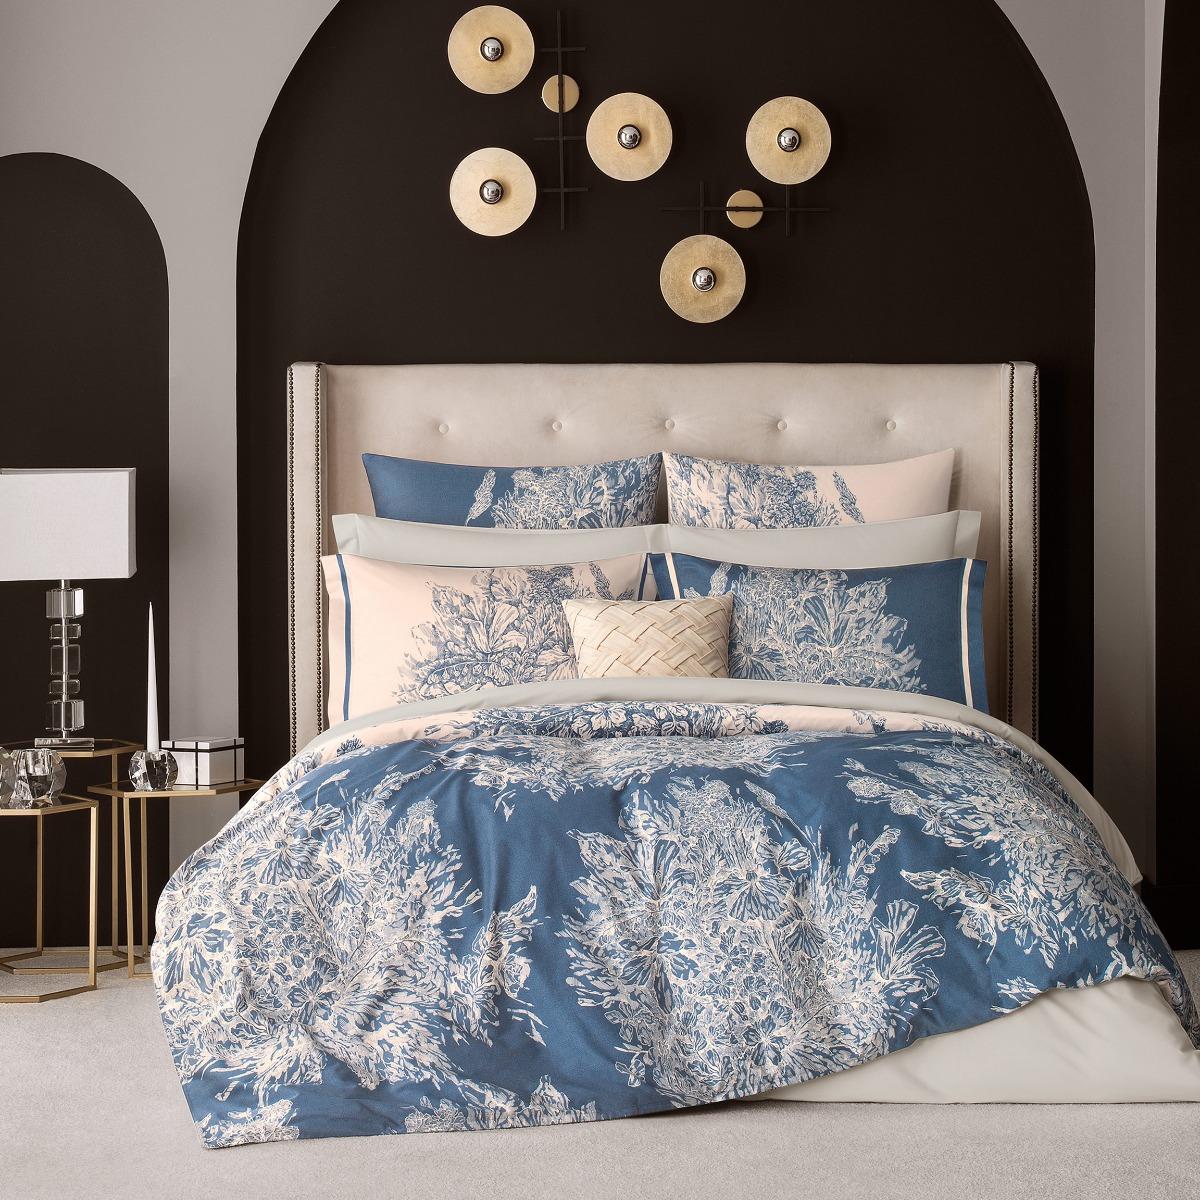 Комплект постельного белья Togas Фонтени бежевый с синим Полуторный комплект садовой мебели lf бежевый с синим из 4 предметов